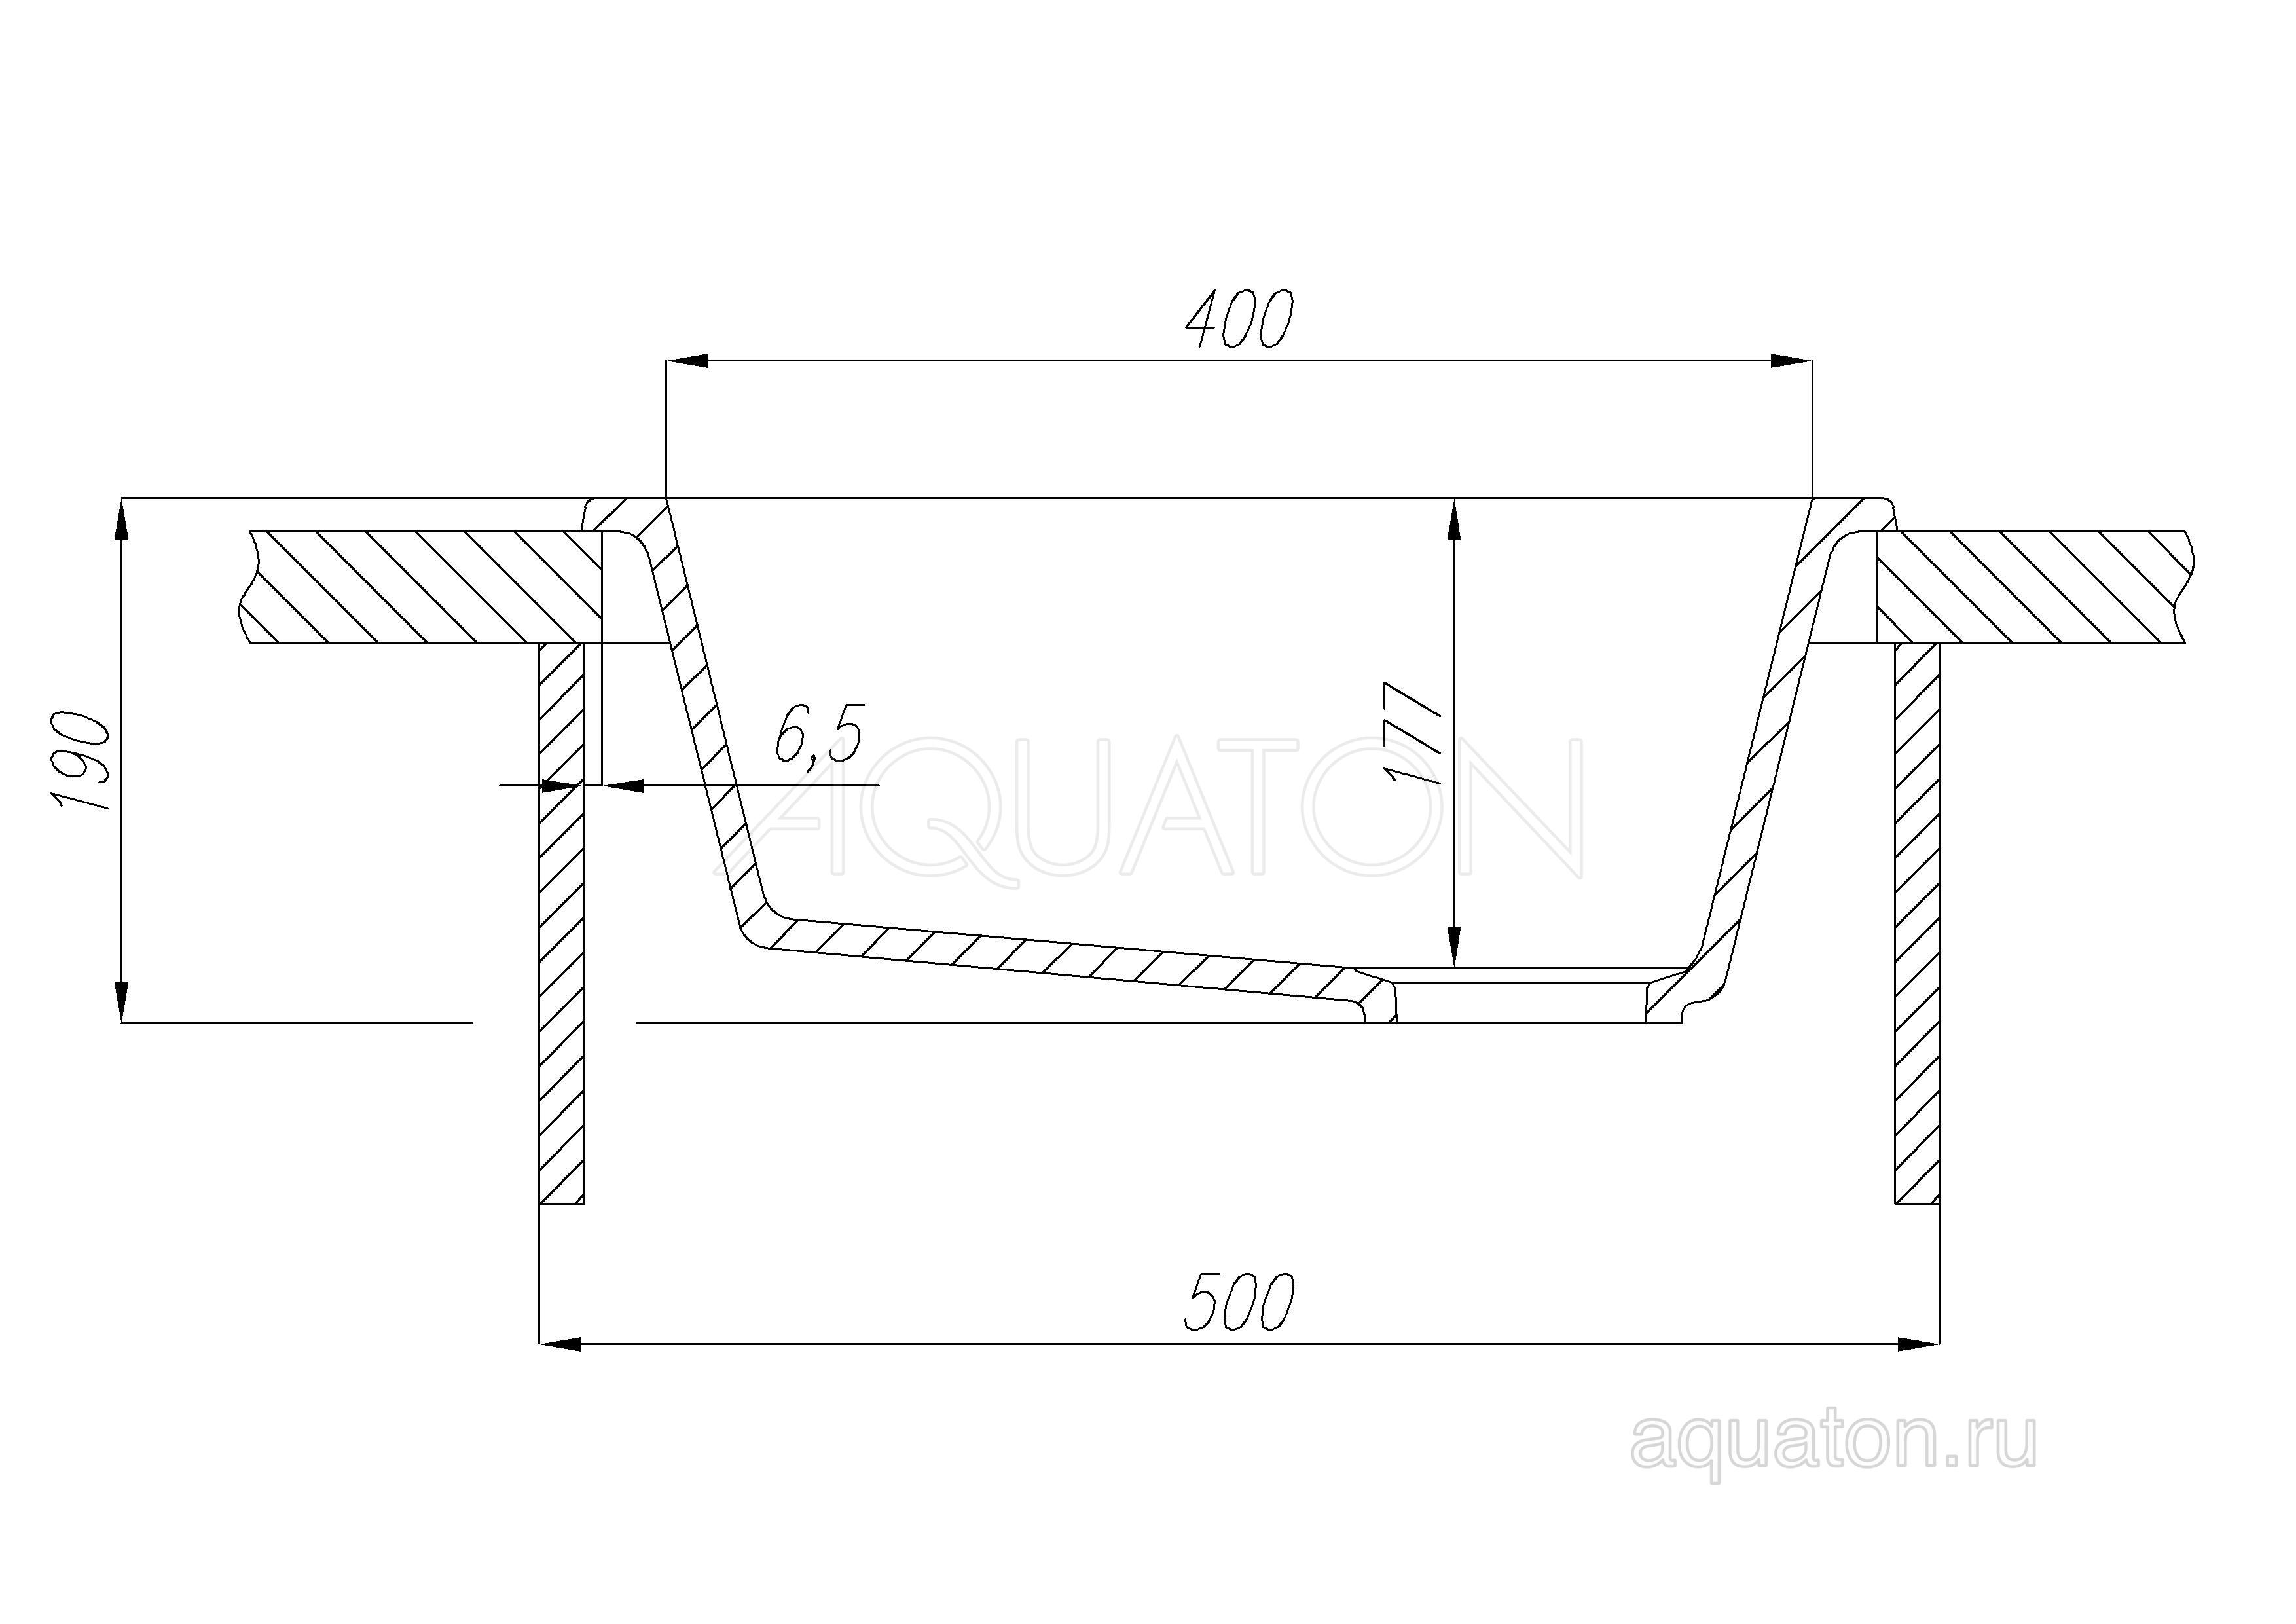 Мойка для кухни Aquaton Парма квадратная графит 1A713032PM210